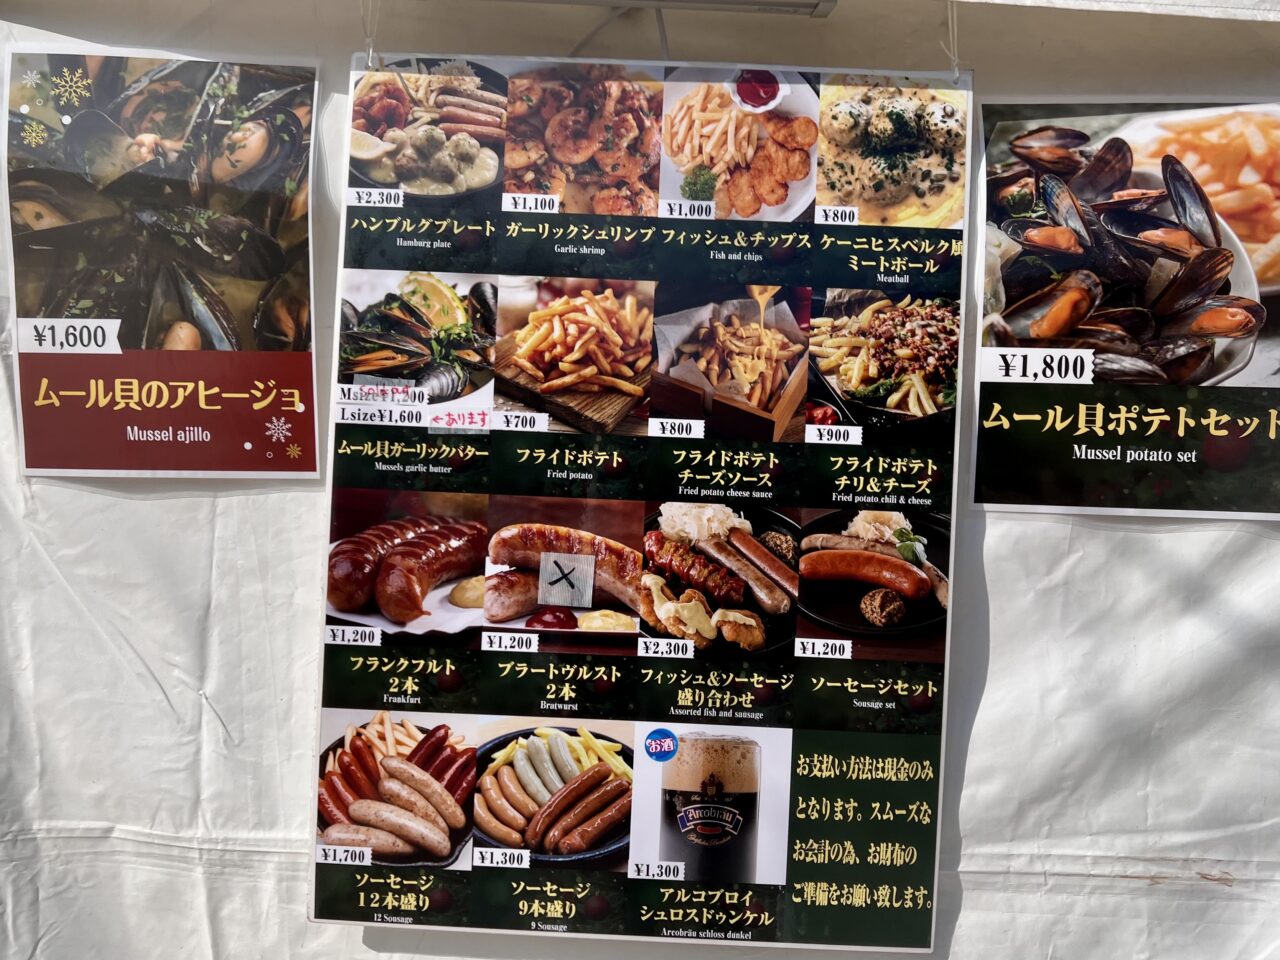 天王寺公園(てんしば)で開催されている「大阪クリスマスマーケットの飲食店のグルメメニューです。ハンブルグハウス